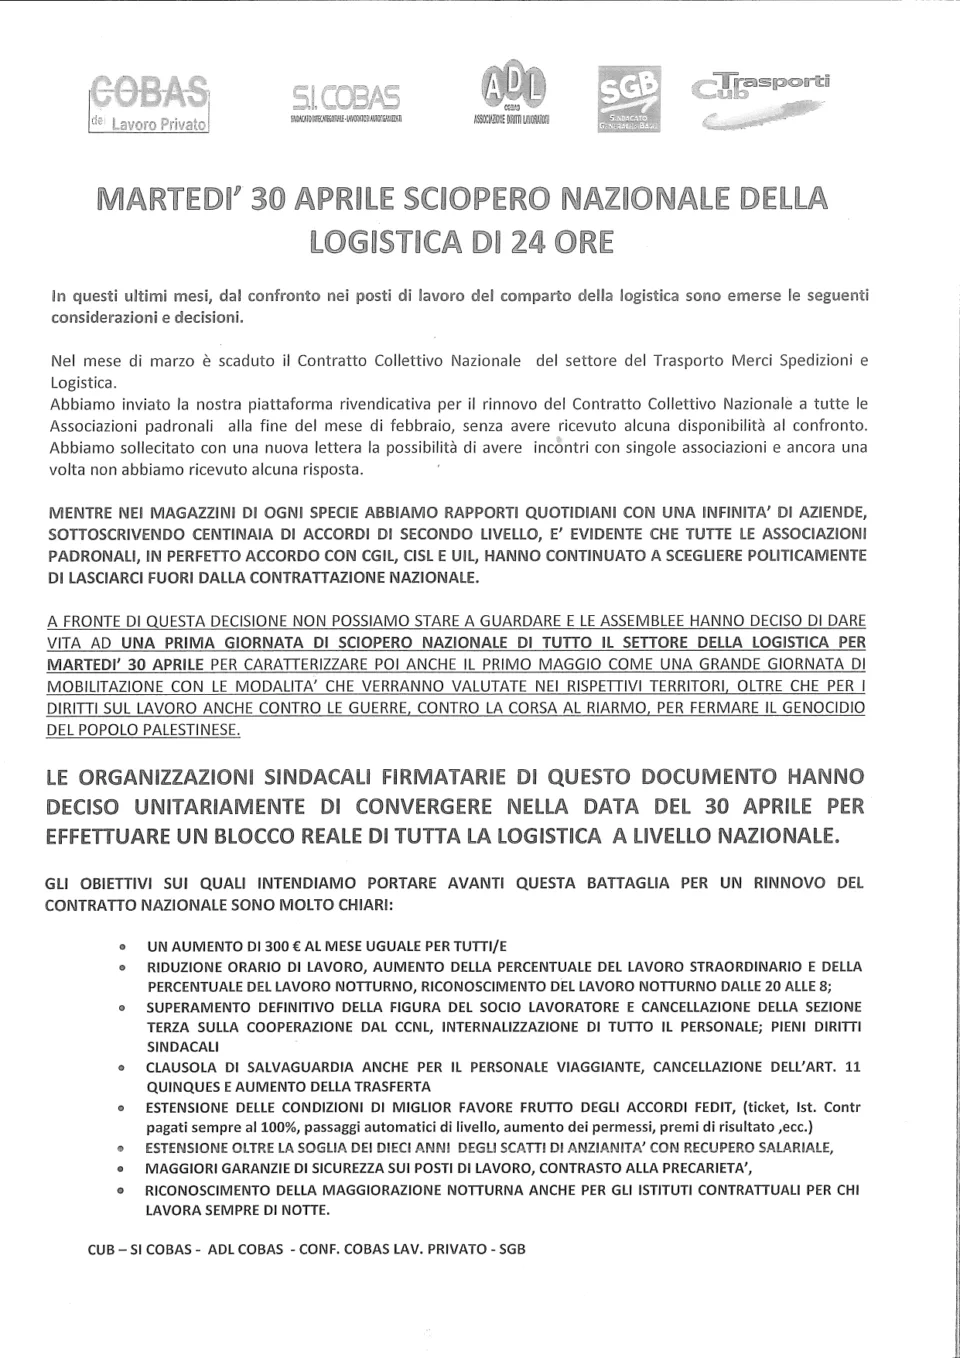 Sindacato di Base ADL Cobas - Sciopero nazionale della logistica: si allarga il fronte delle organizzazioni sindacali aderenti